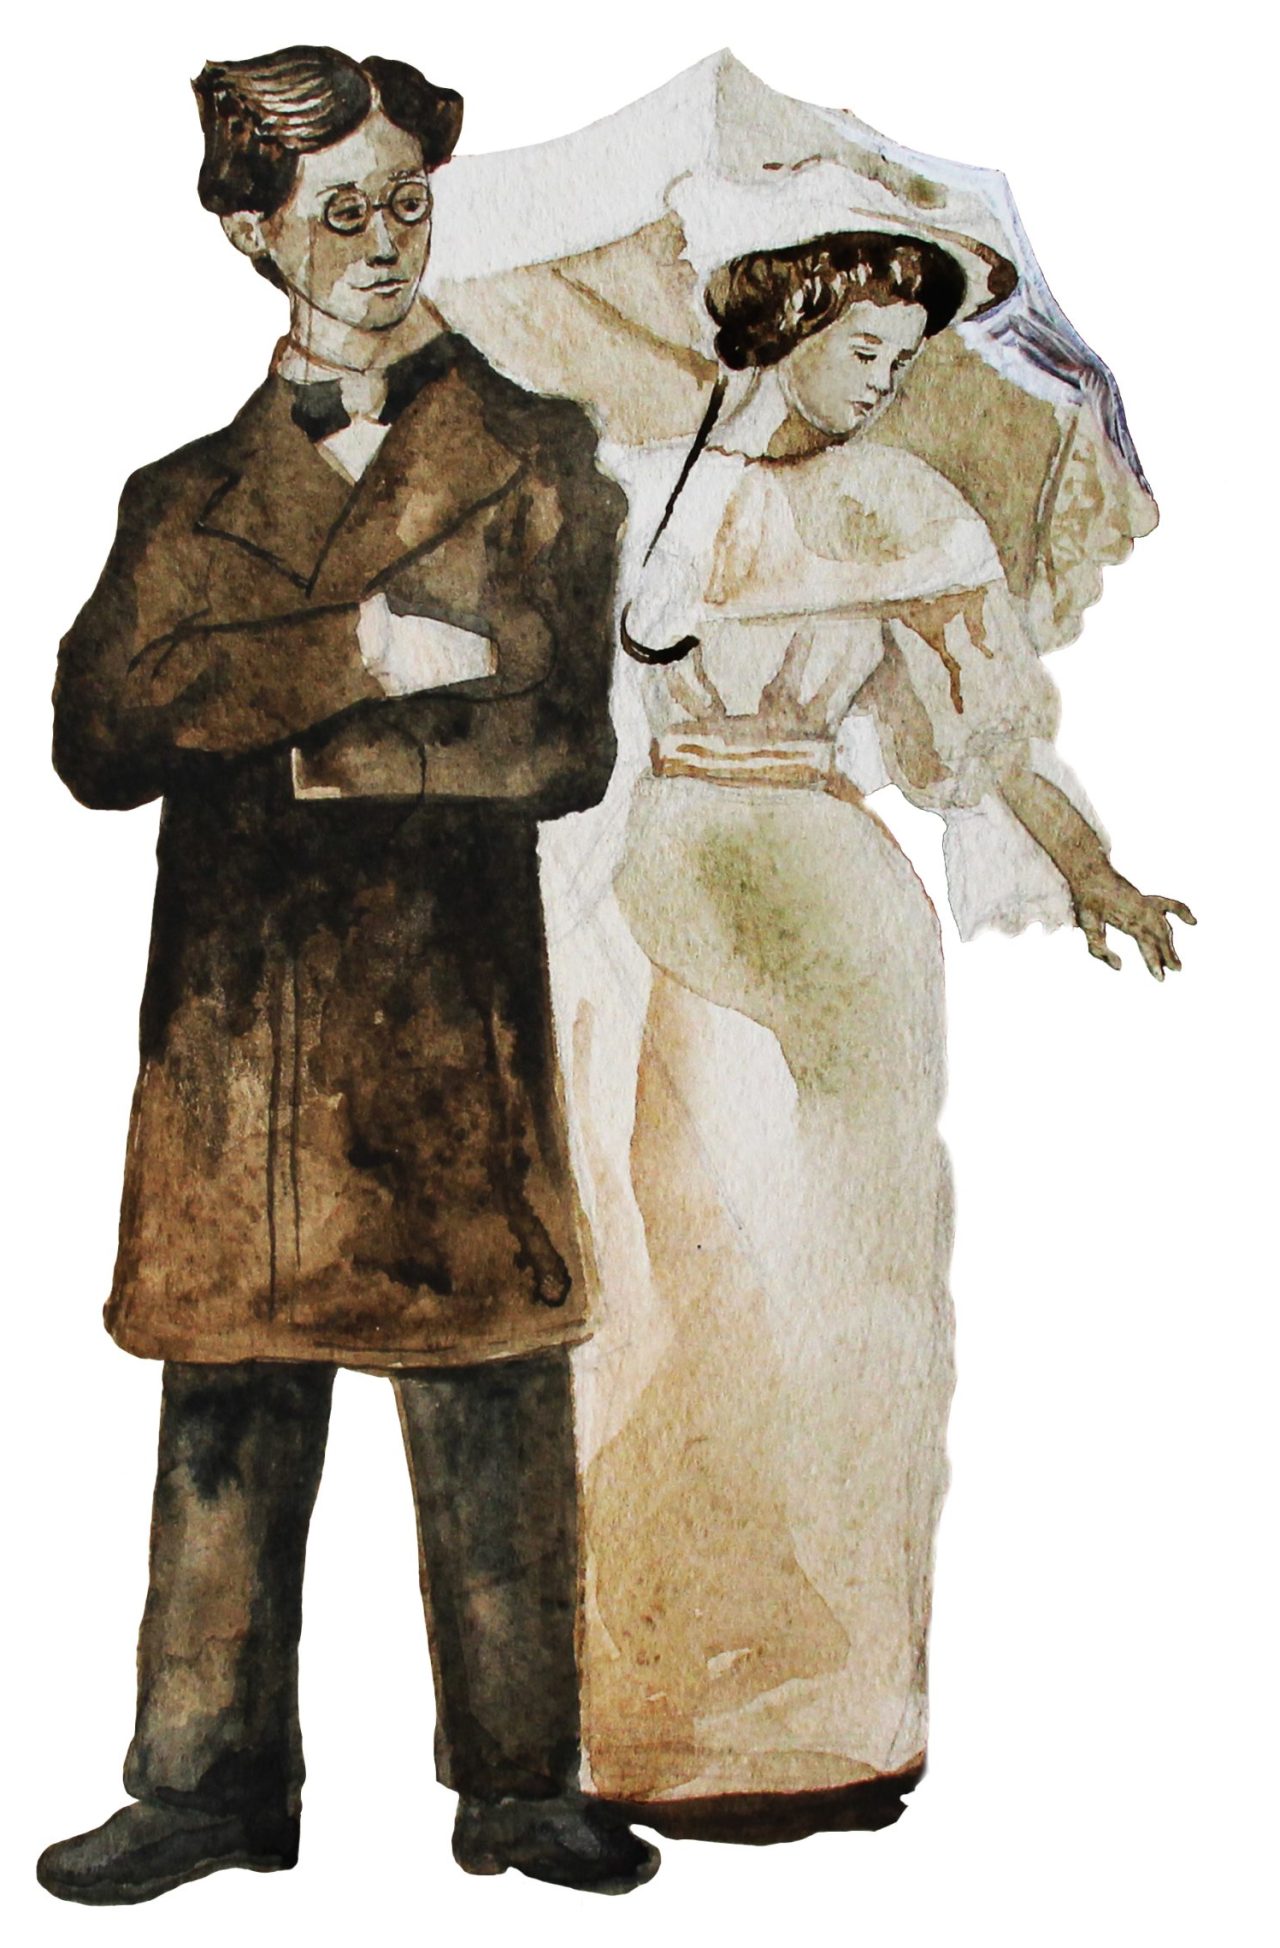 Ektepar fra tidlig 1900-tallet der mannen i mørke klær står foran kvinnen i hvite klær.